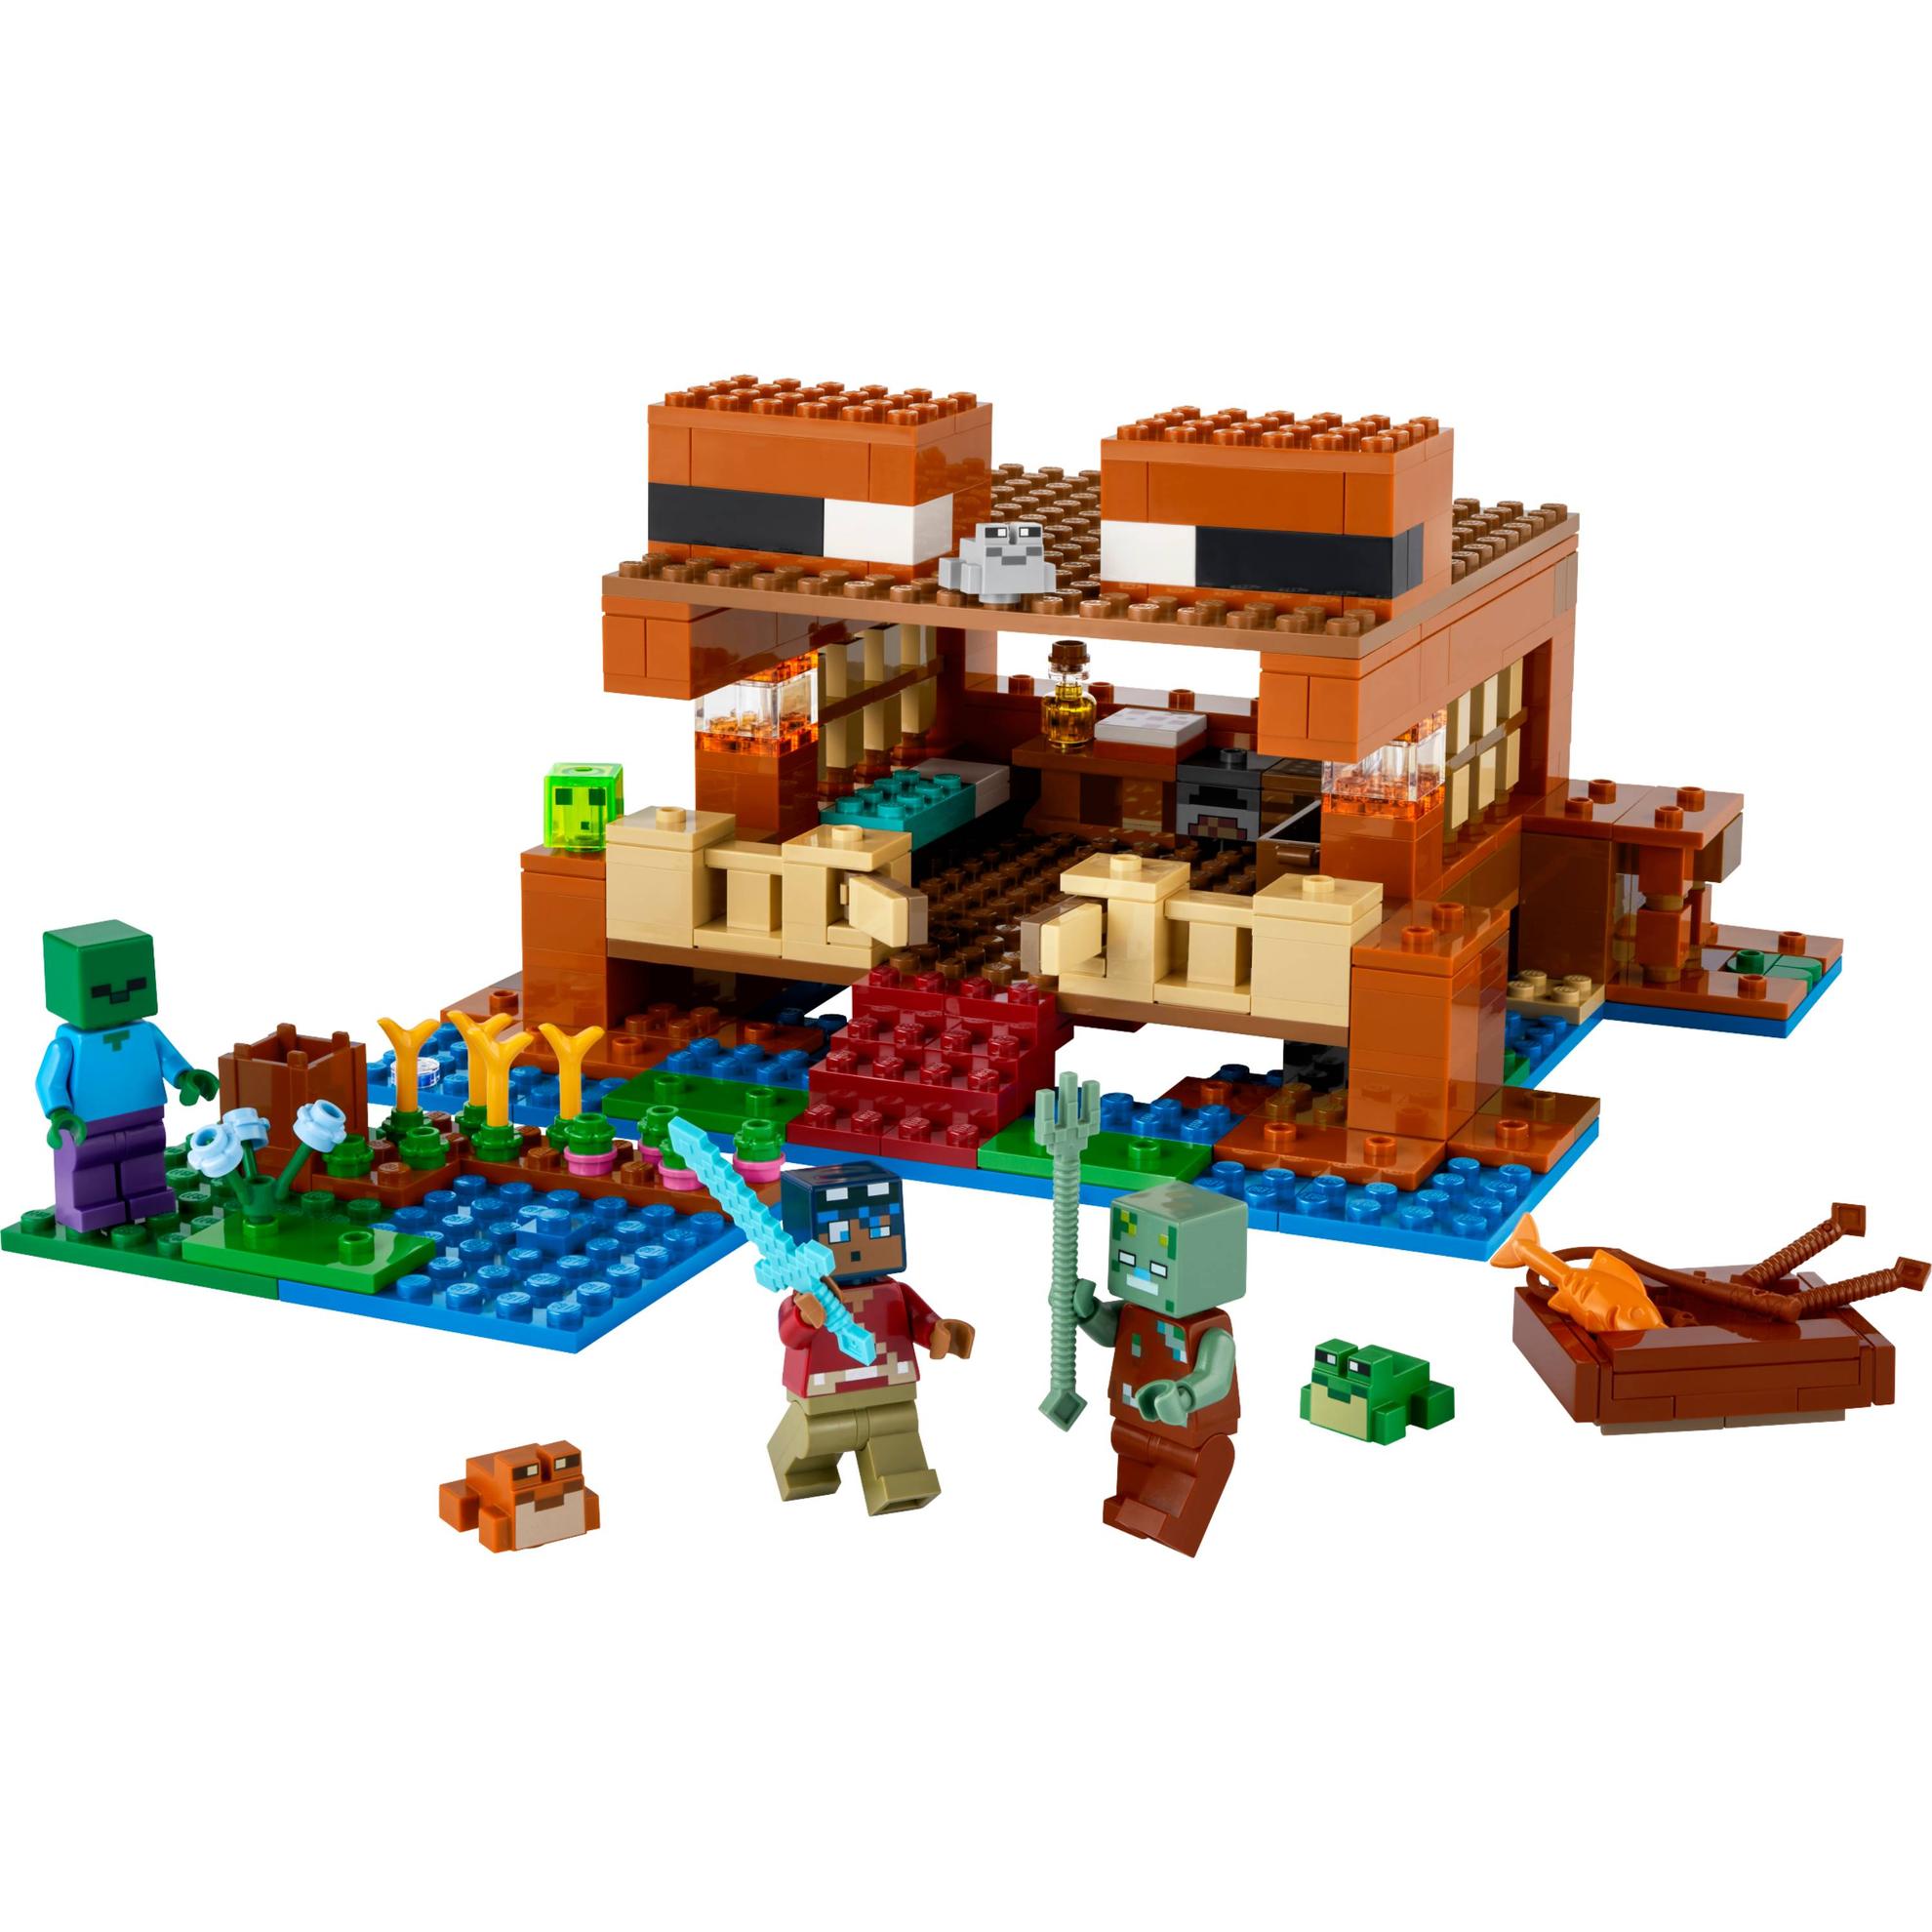 Oferta de LEGO Minecraft - A Casa do Sapo por R$529,99 em Ri Happy